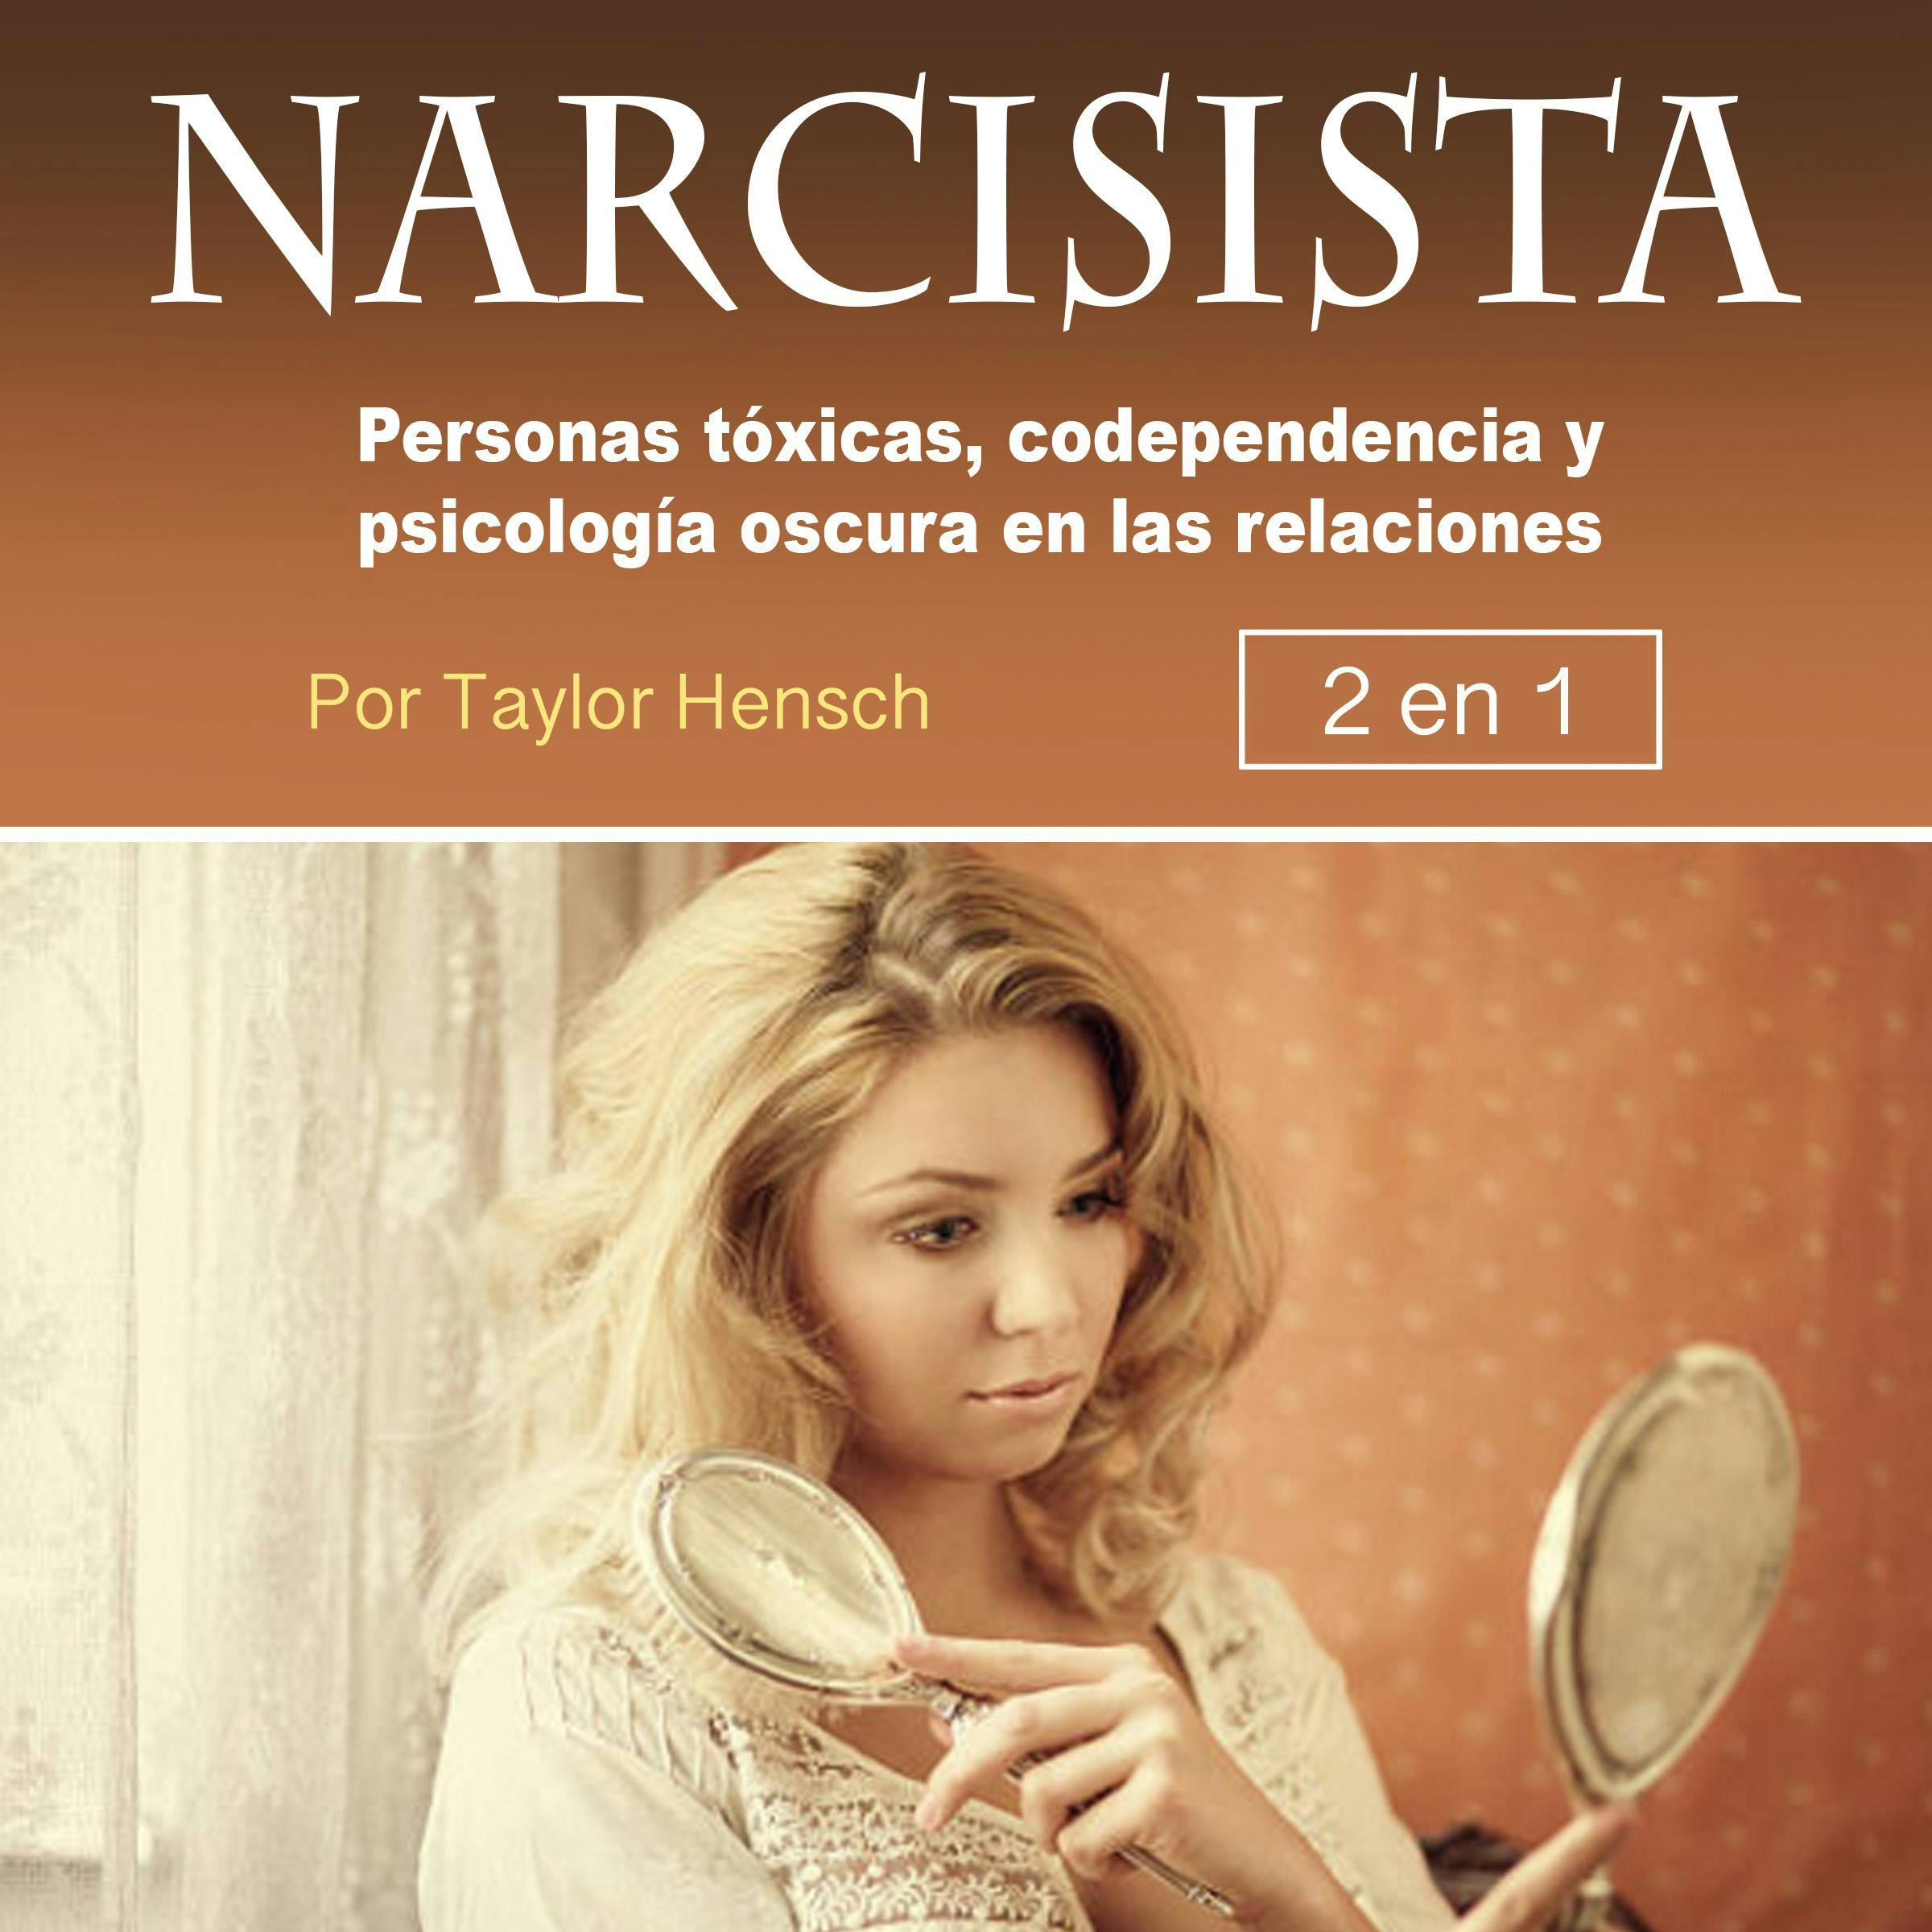 Narcisista: Personas tóxicas, codependencia y psicología oscura en las relaciones - Taylor Hench